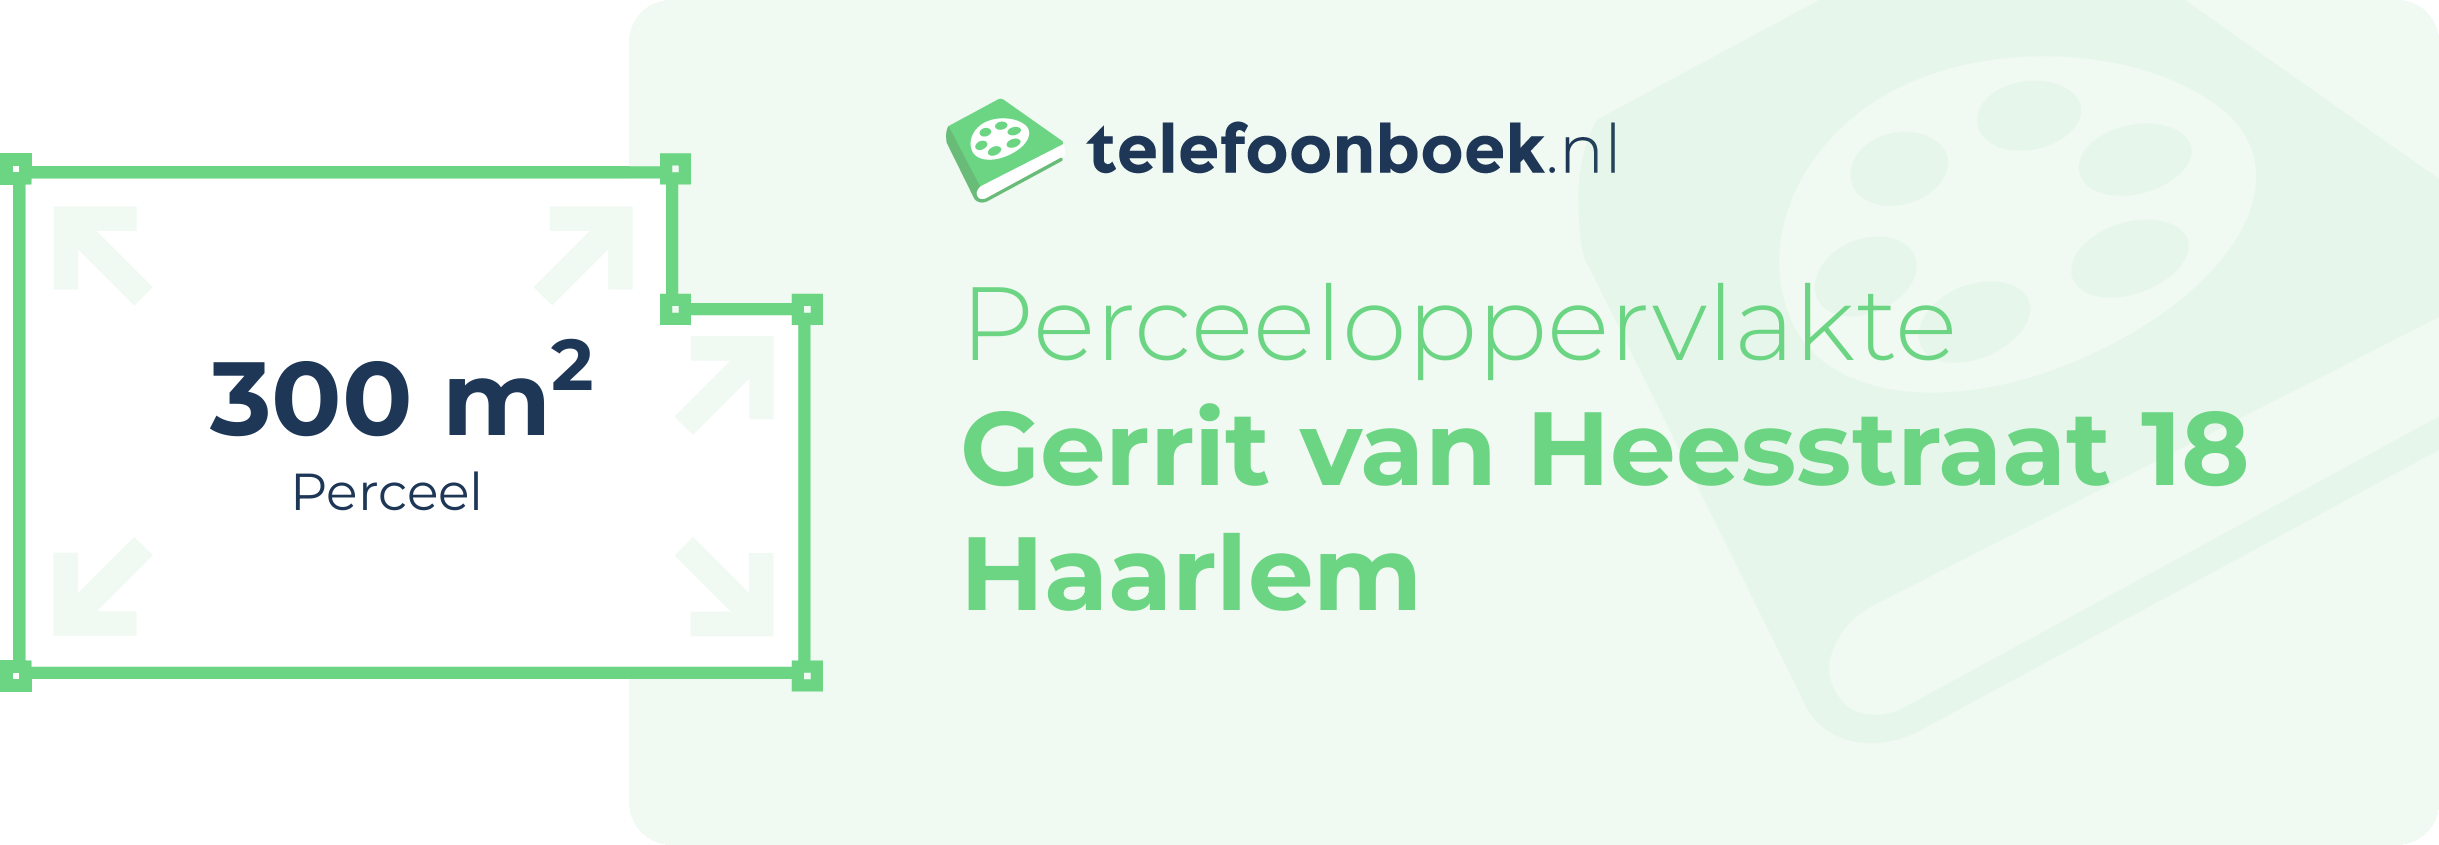 Perceeloppervlakte Gerrit Van Heesstraat 18 Haarlem